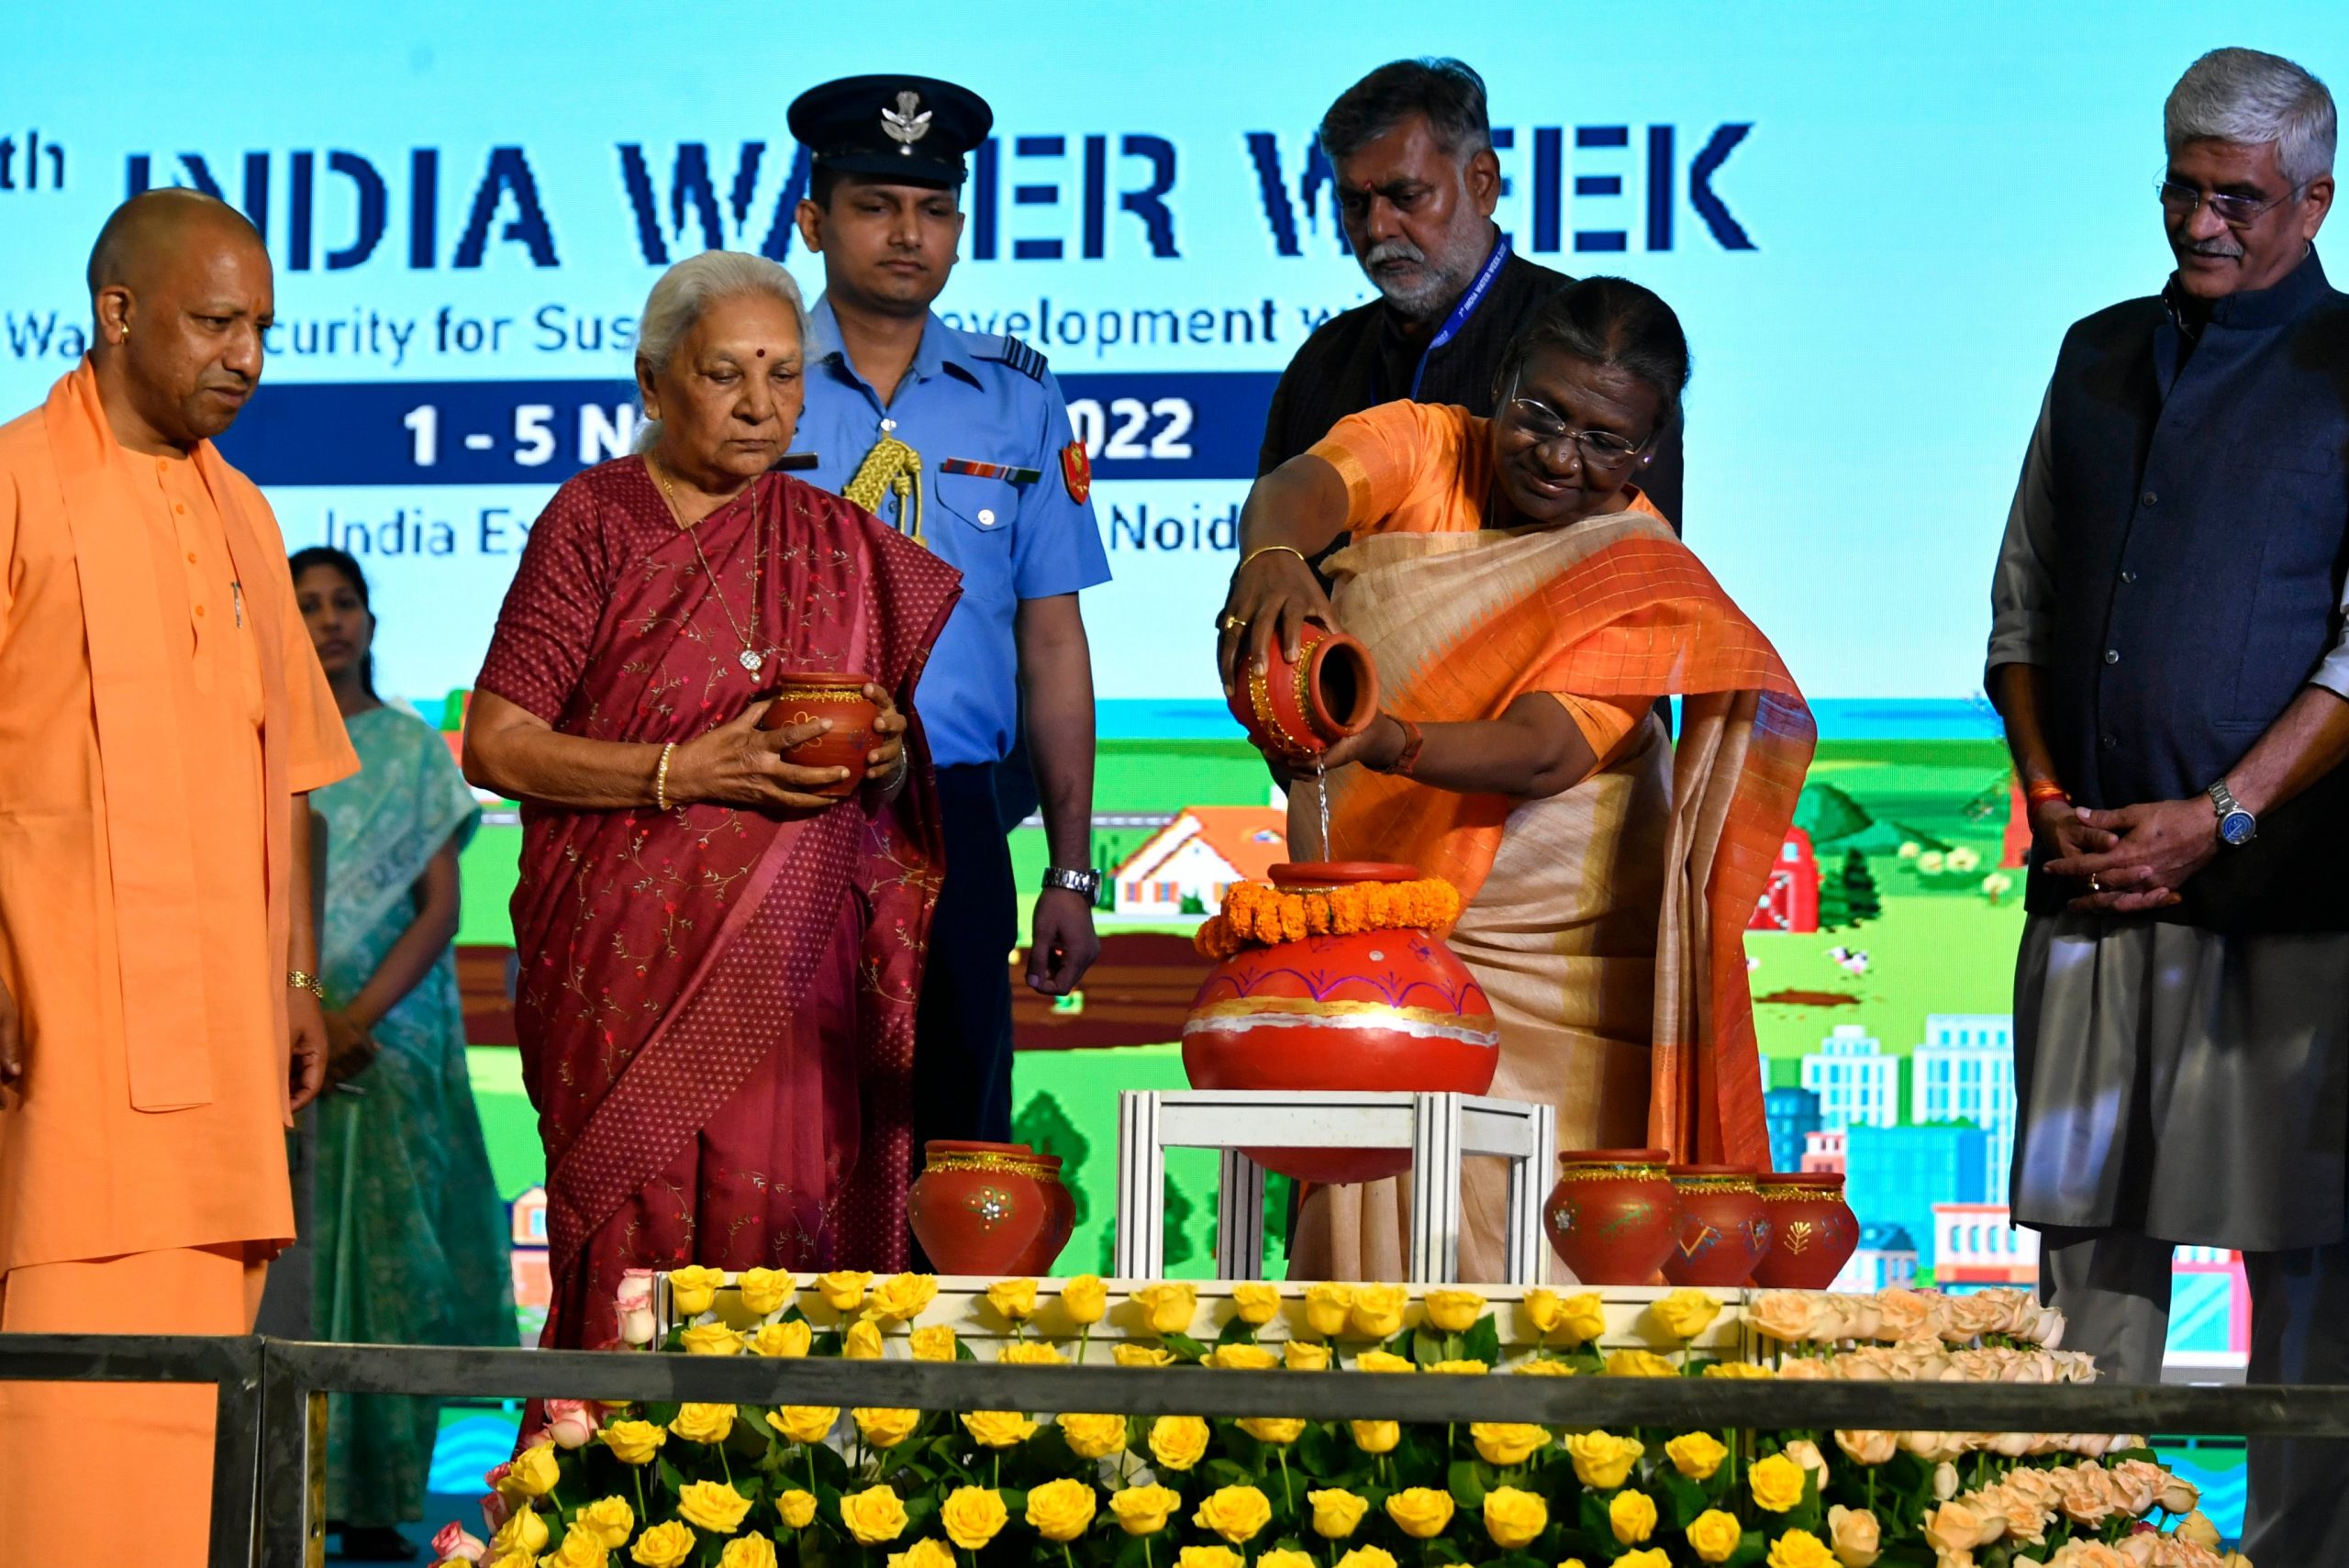 رئيسة الهند مورمو: أزمة المياه قضية معقدة ومتعددة أبعاد يجب التعامل معها بتنسيق الجهود الجماعية